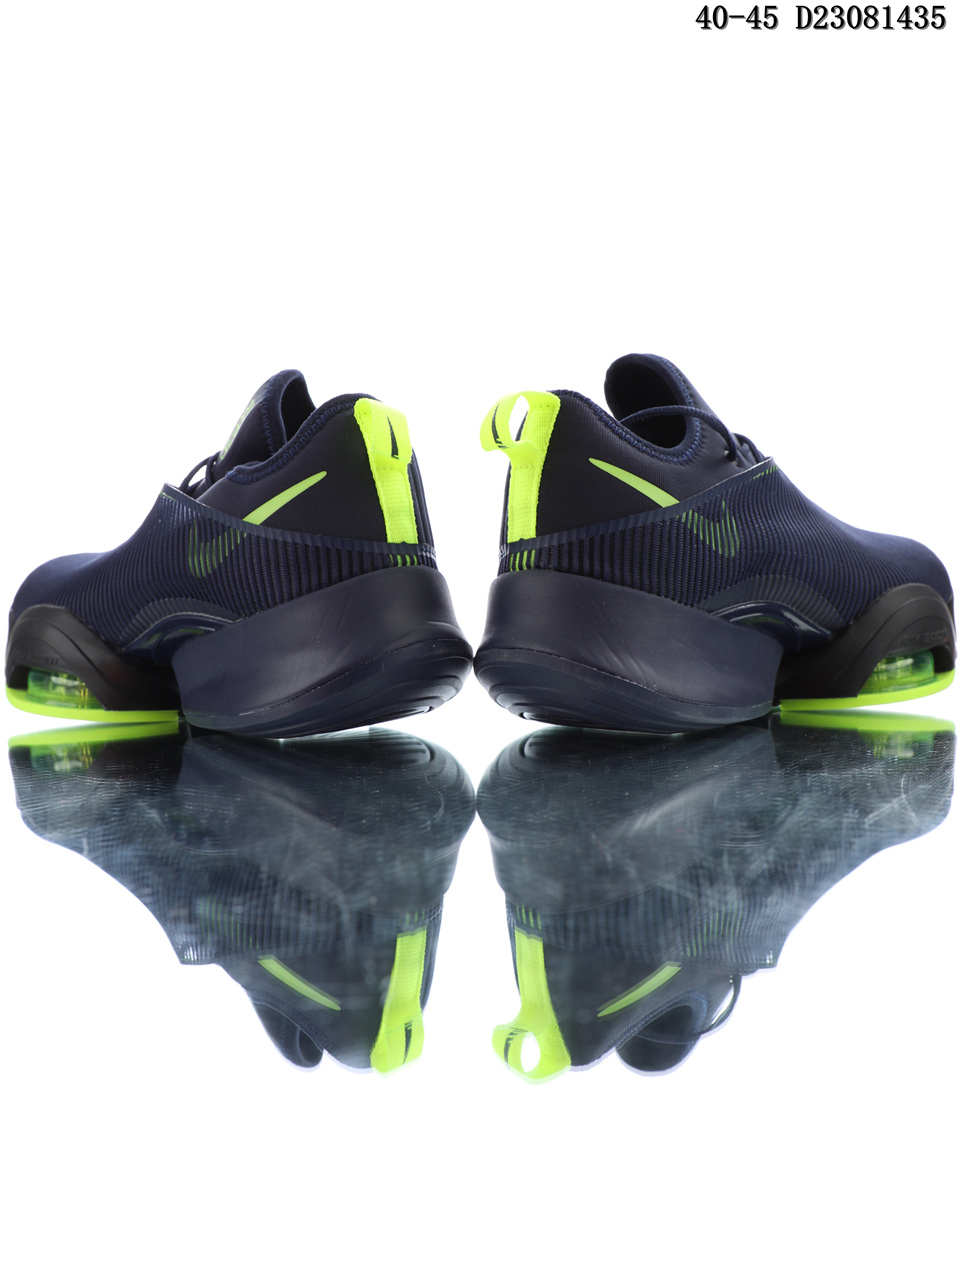 Nike Air Zoom Superrep black green jogging shoes Heel